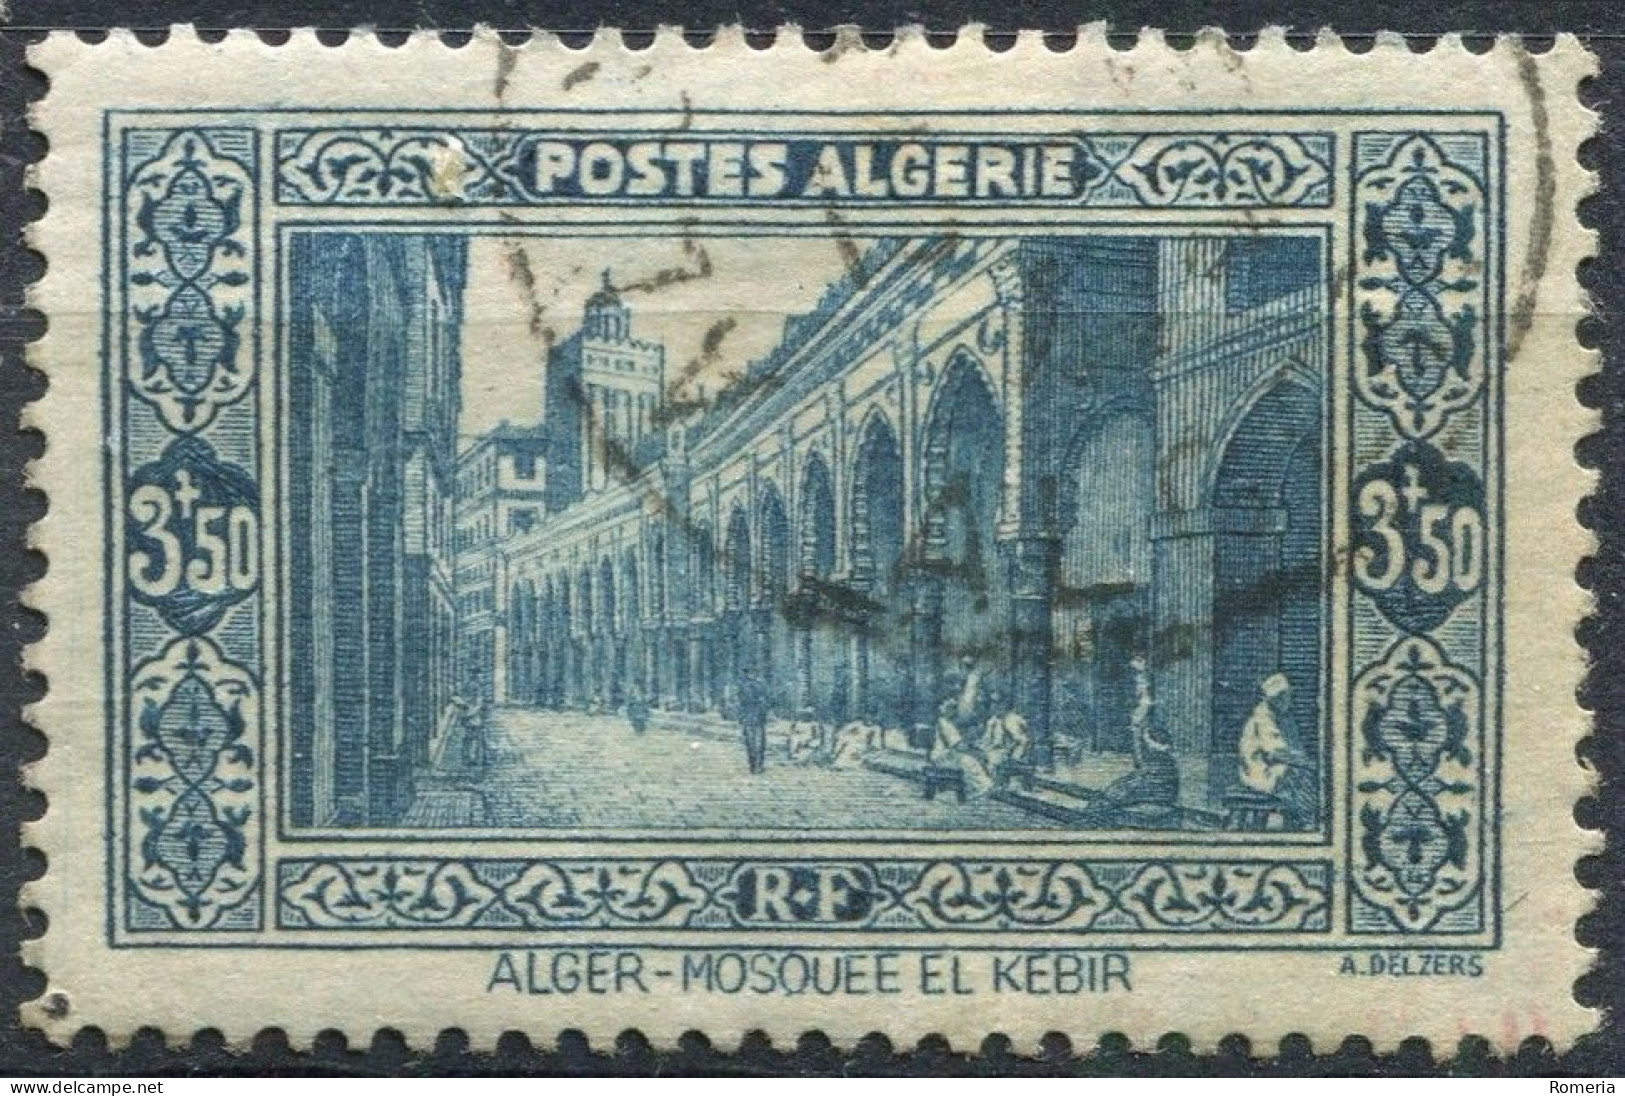 Algérie - 1936 -> 1941 - Lots timbres oblitérés - Yt 101 á 126 (sauf 113)- 138 - 140 - 140A - 140A - 141A - 148 - 167